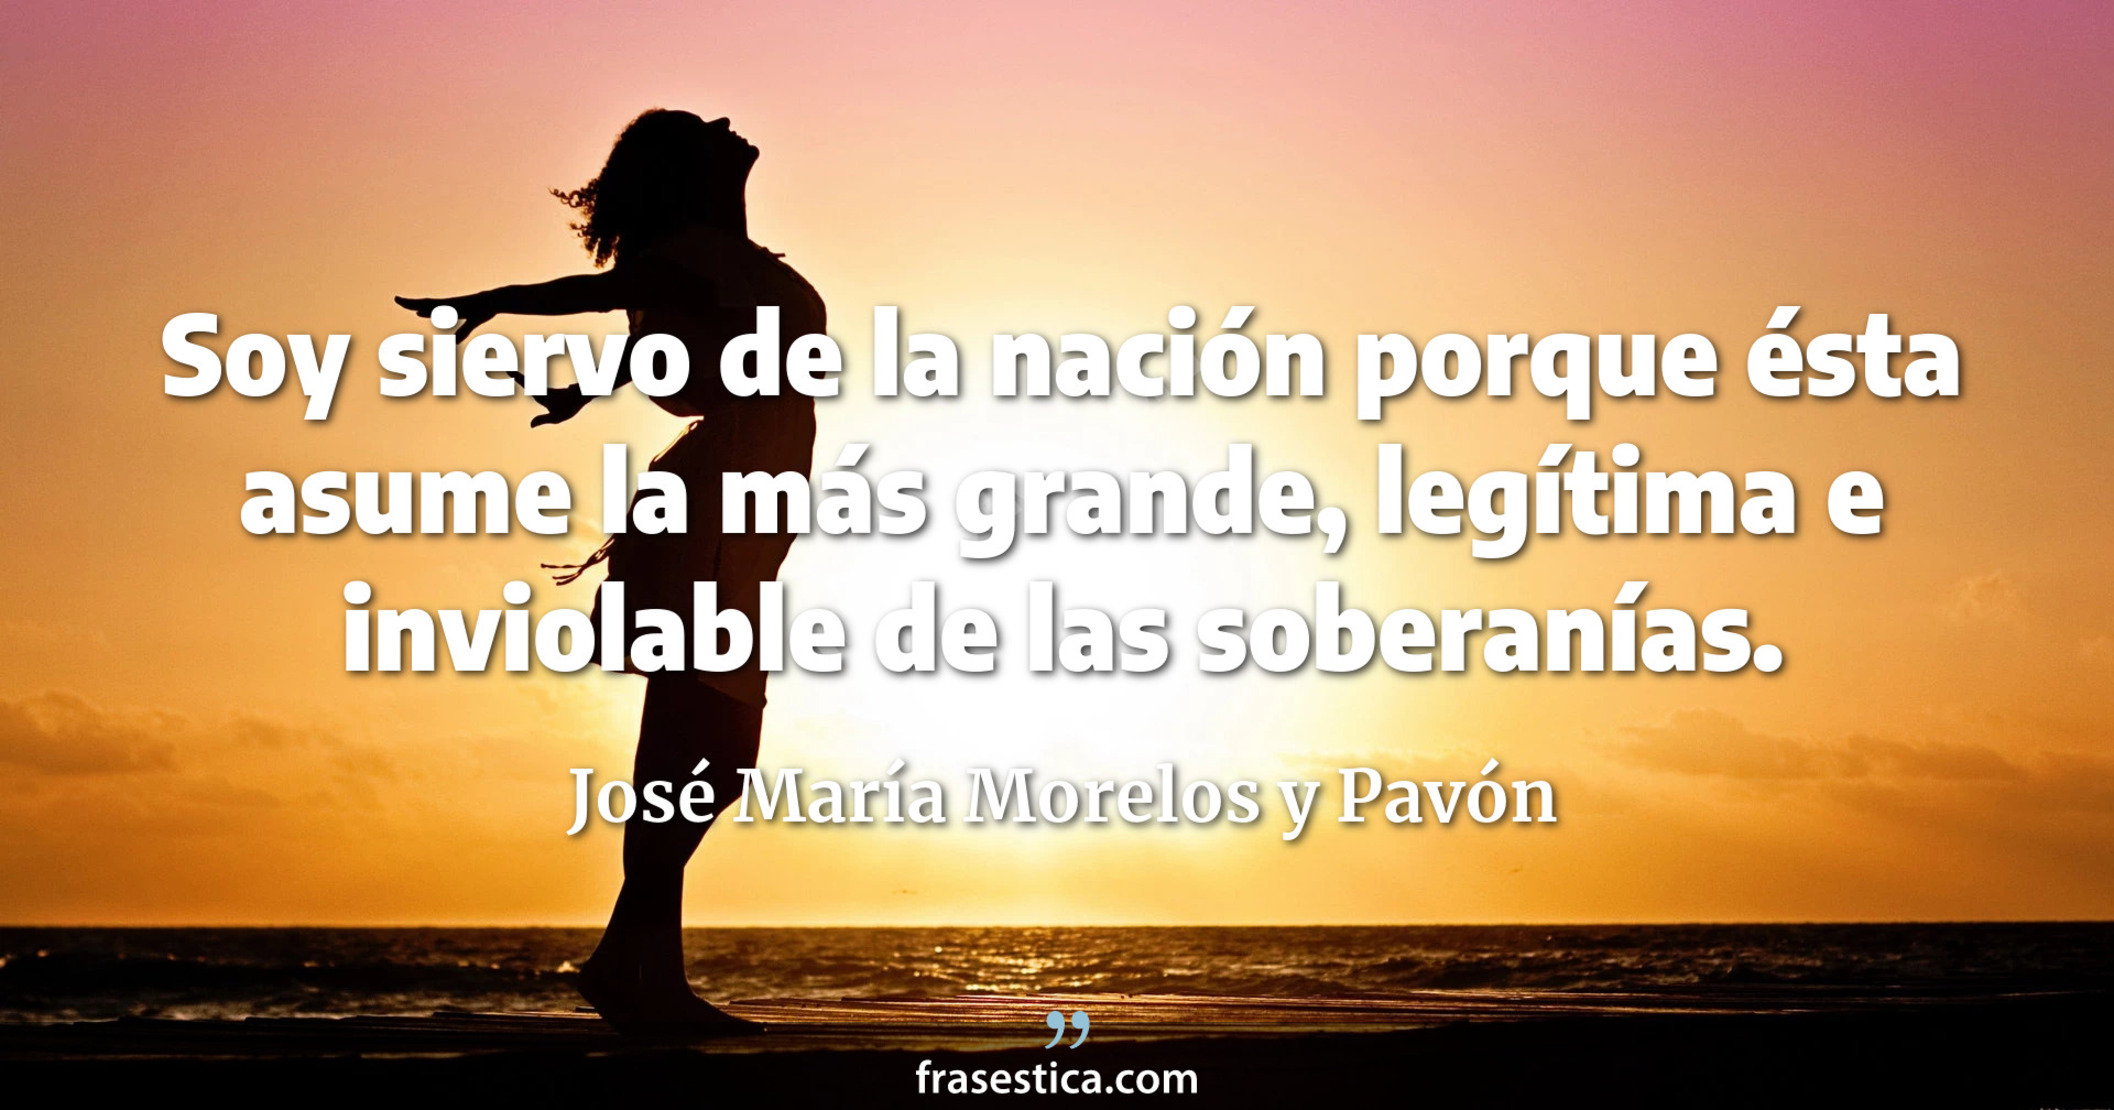 Soy siervo de la nación porque ésta asume la más grande, legítima e inviolable de las soberanías. - José María Morelos y Pavón